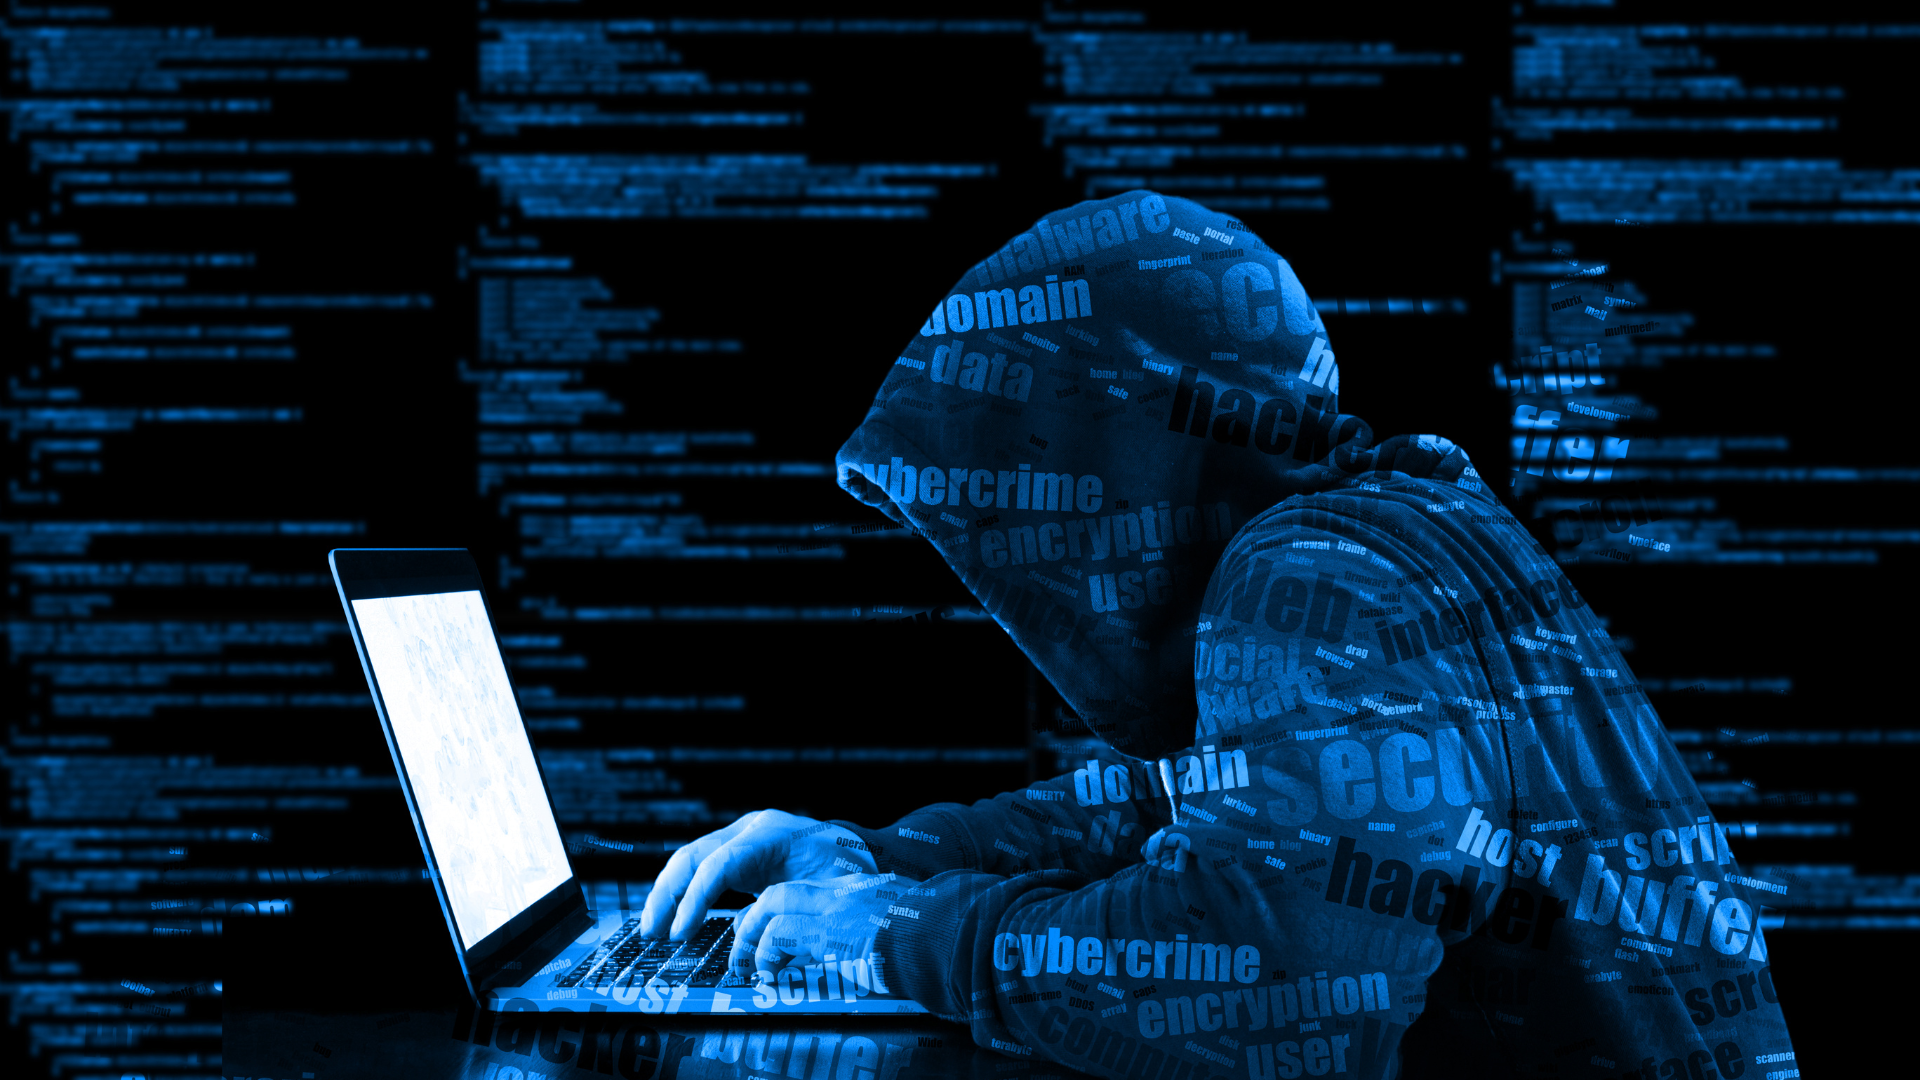 Interpol captura 31 personas en redada global contra ransomware